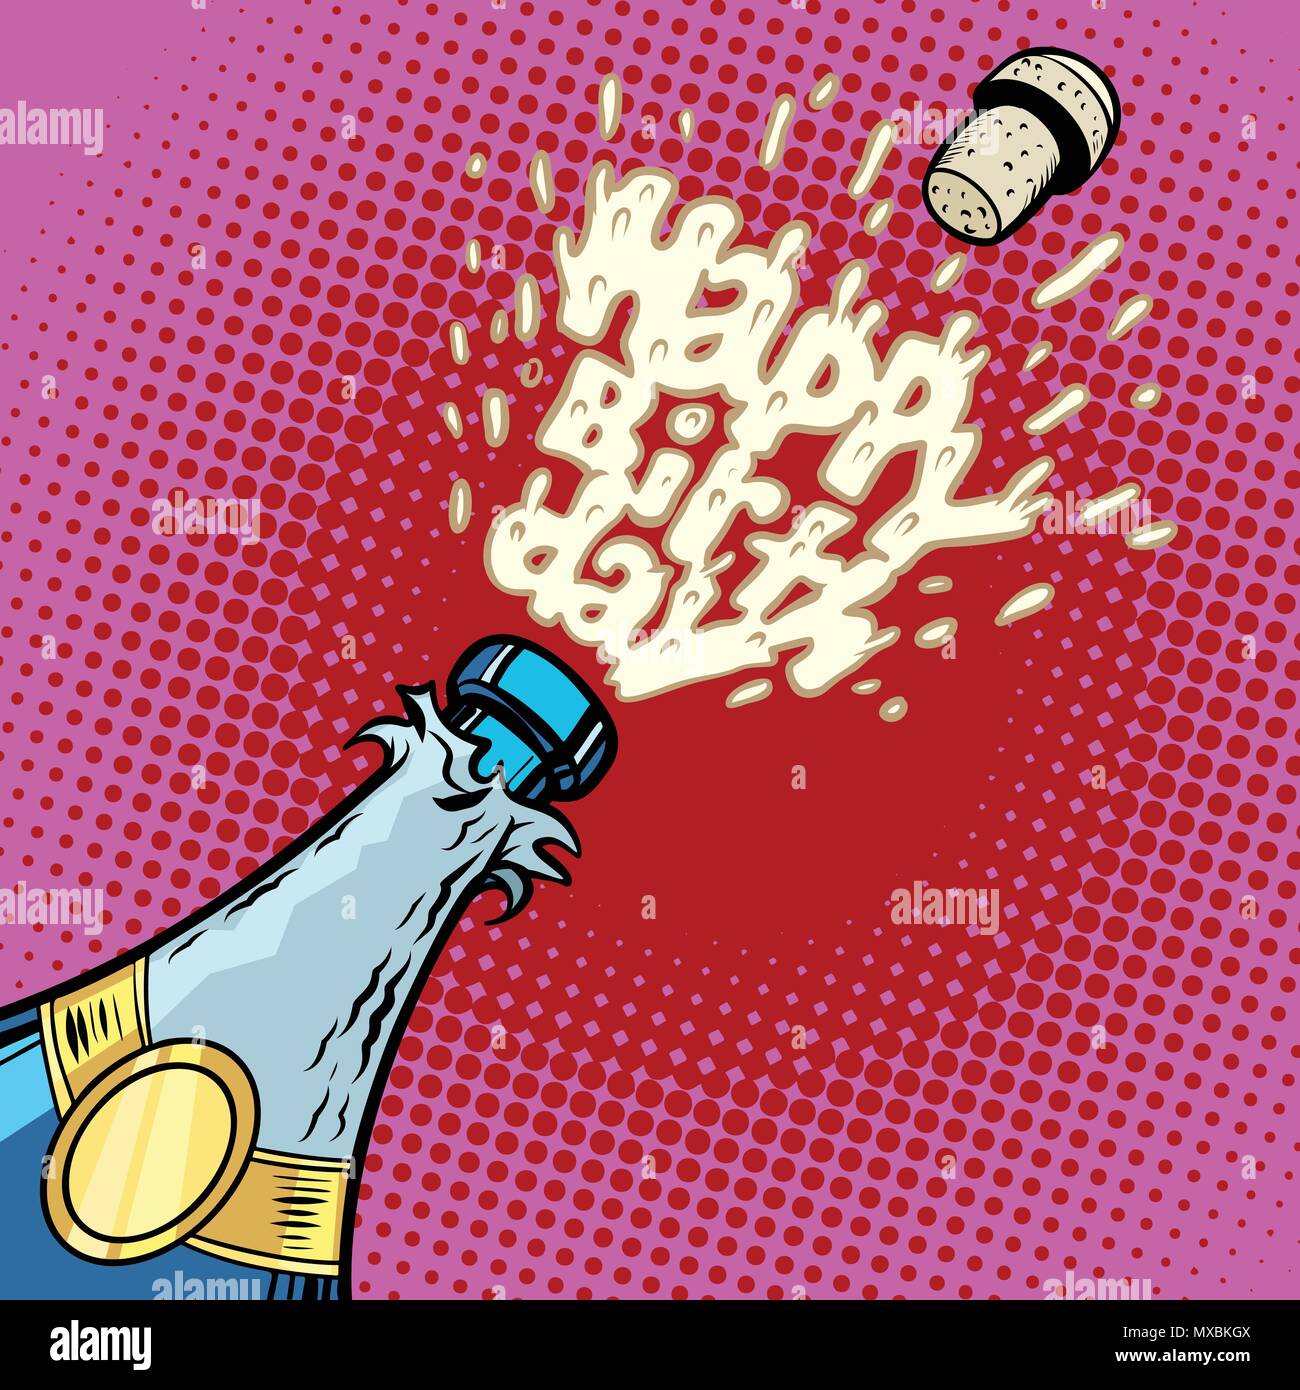 Feliz cumpleaños. Botella de champán se abre, espuma y Cork. Comic cartoon pop art ilustración vector vintage retro kitsch dibujo Ilustración del Vector